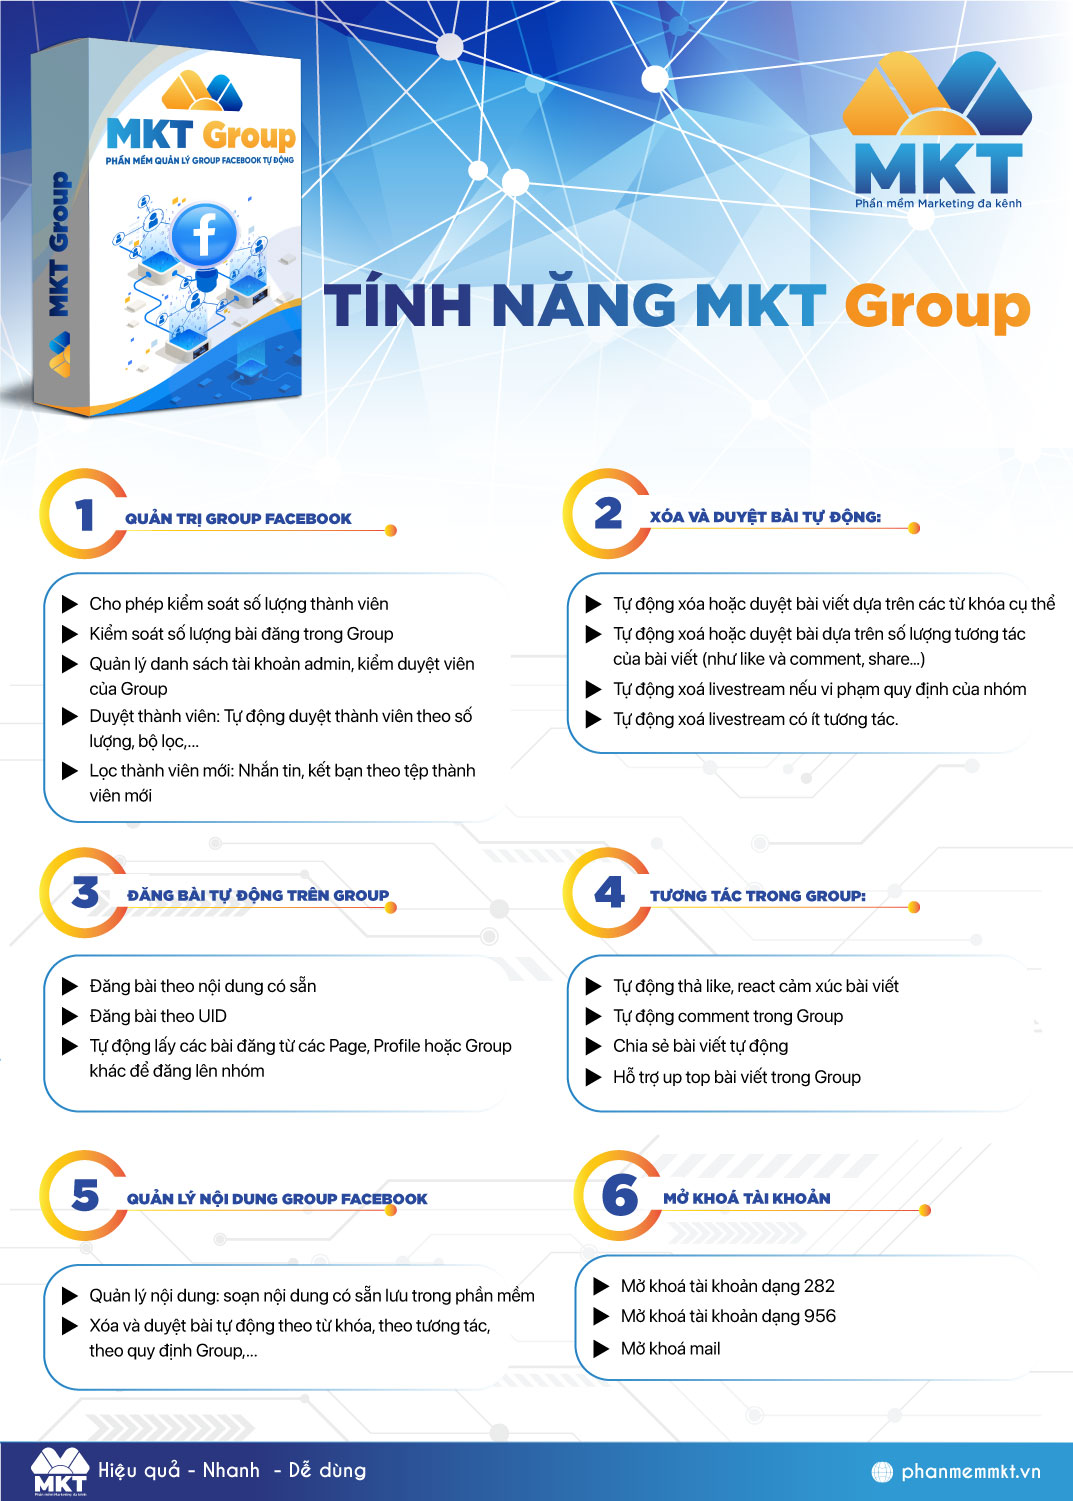 Tính năng chính của MKT Group